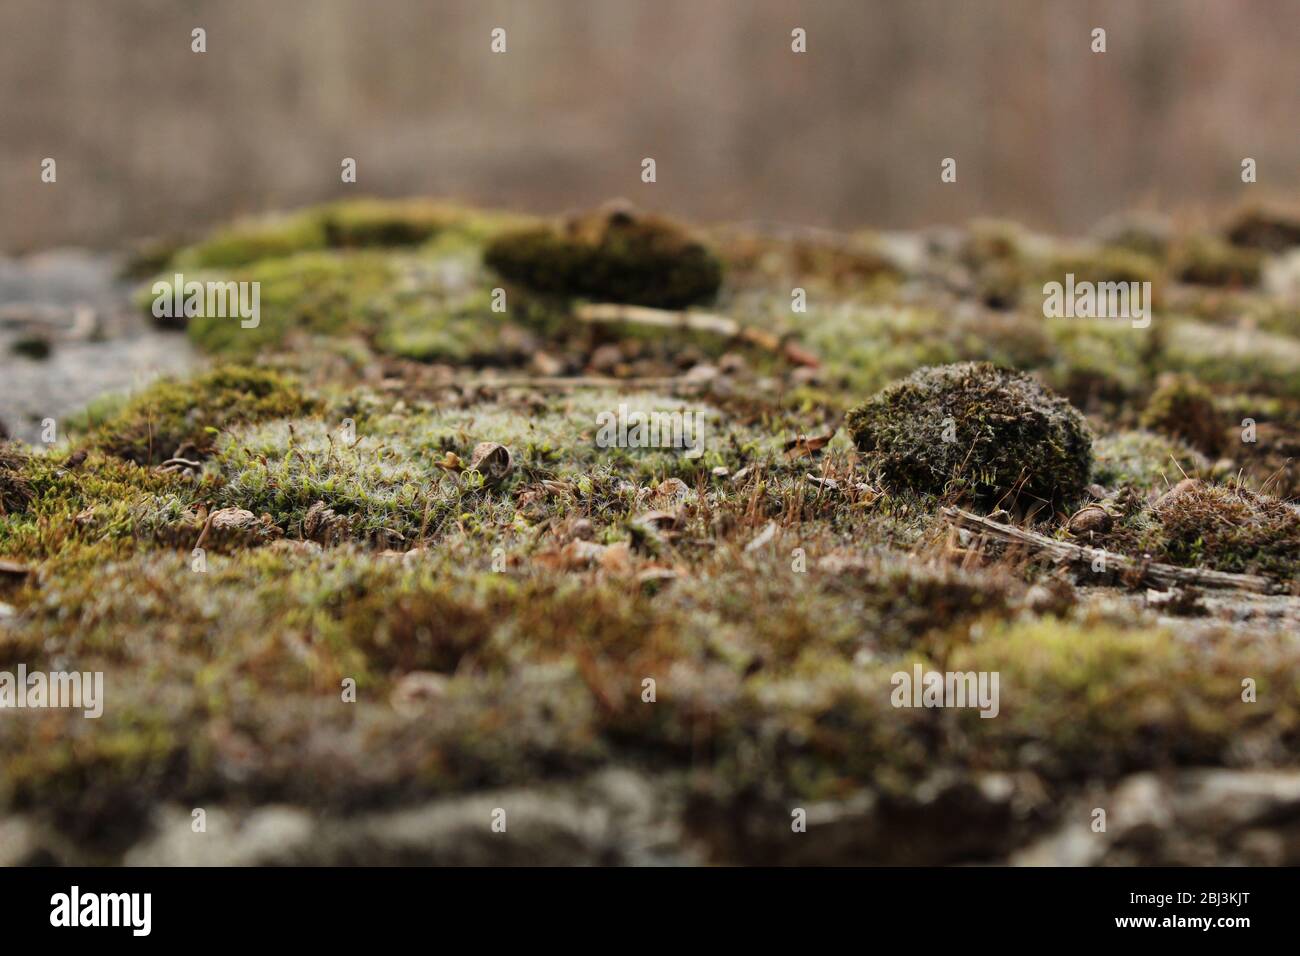 Schönes grünes Moos im Wald, Moosnähe, Makro. Flechten wächst auf dem alten trockenen Baum, Hintergrund von Moos. Bryophyta in vivo, Frühling Natur Wald Stockfoto